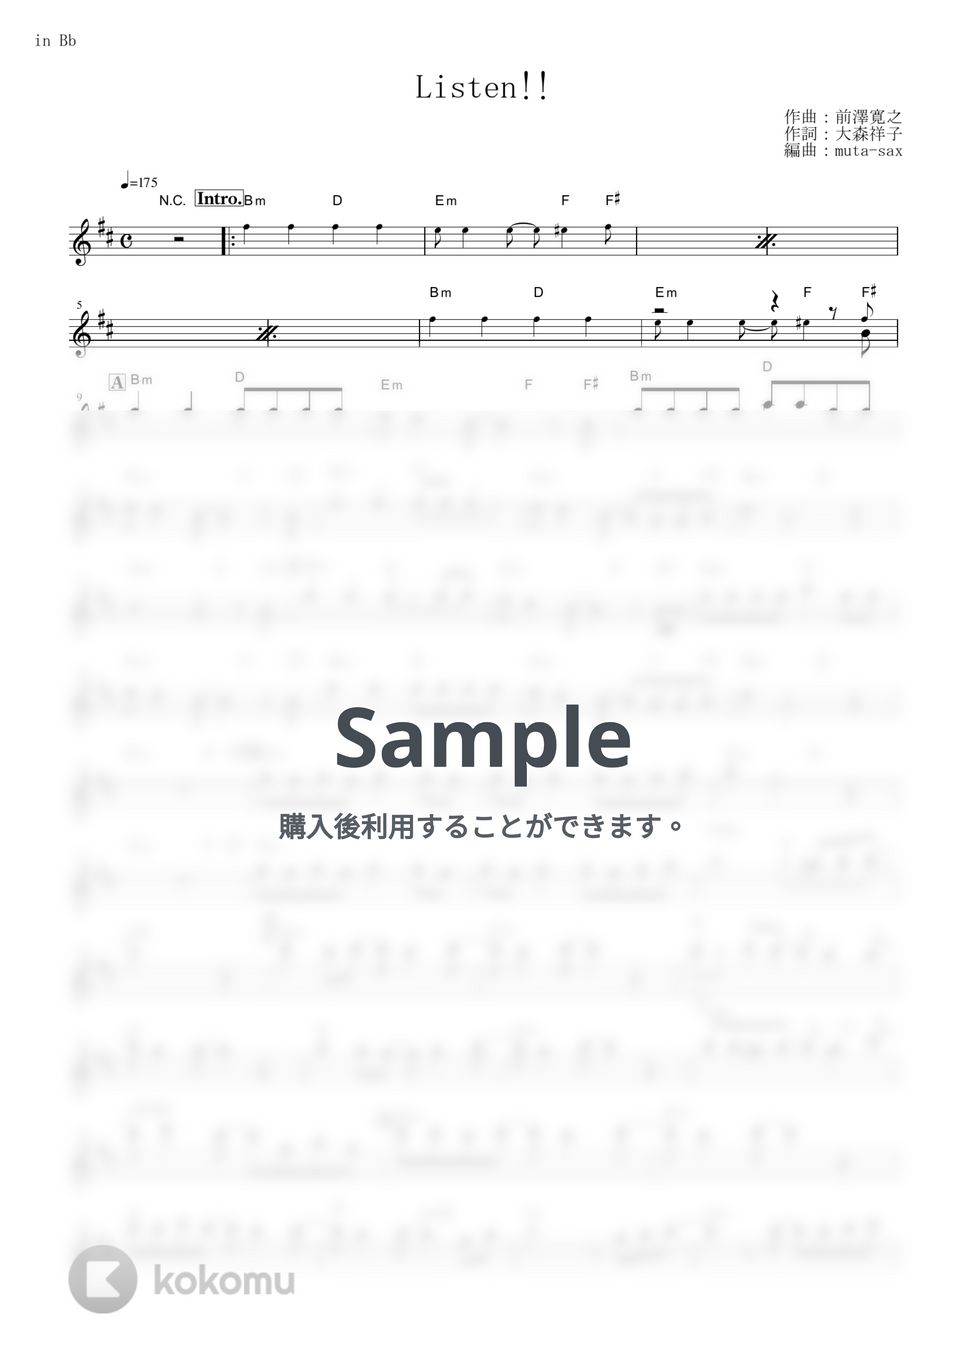 放課後ティータイム - Listen!! (『けいおん!!』 / in Bb) by muta-sax